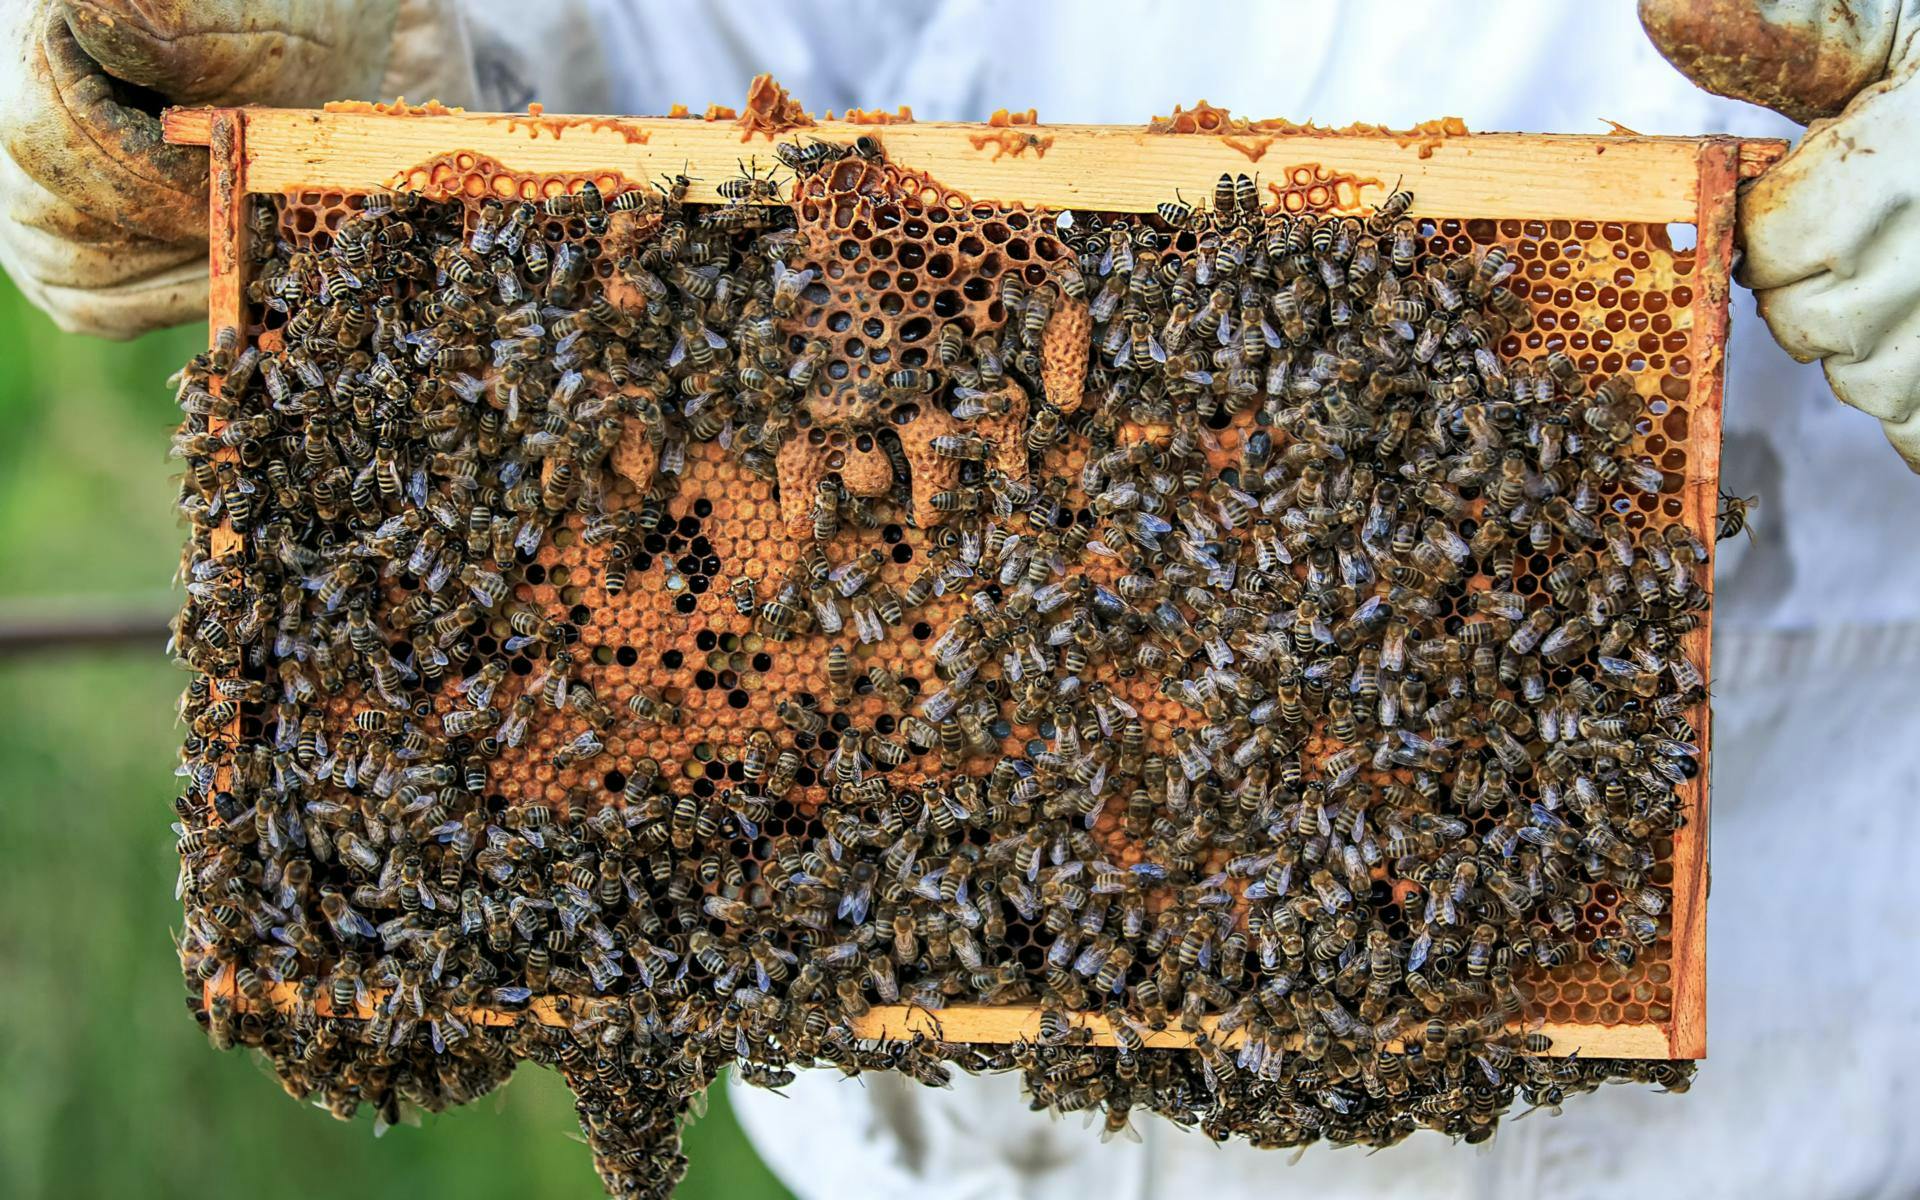 Bee Hive